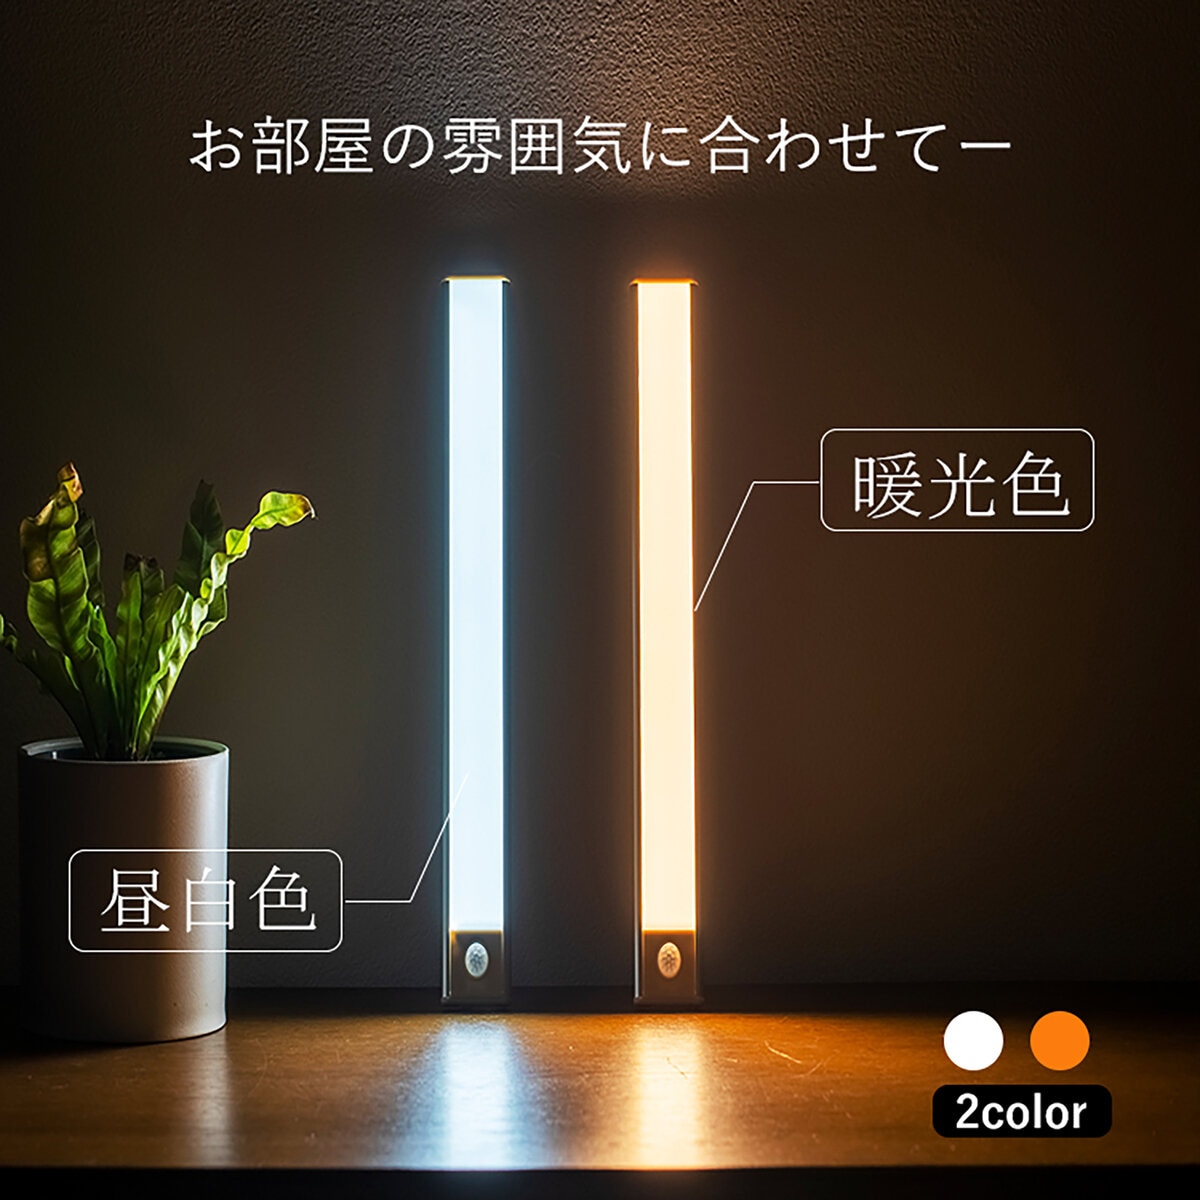 薄型 人感センサーLEDライト Mサイズ 幅280mm Costco Japan